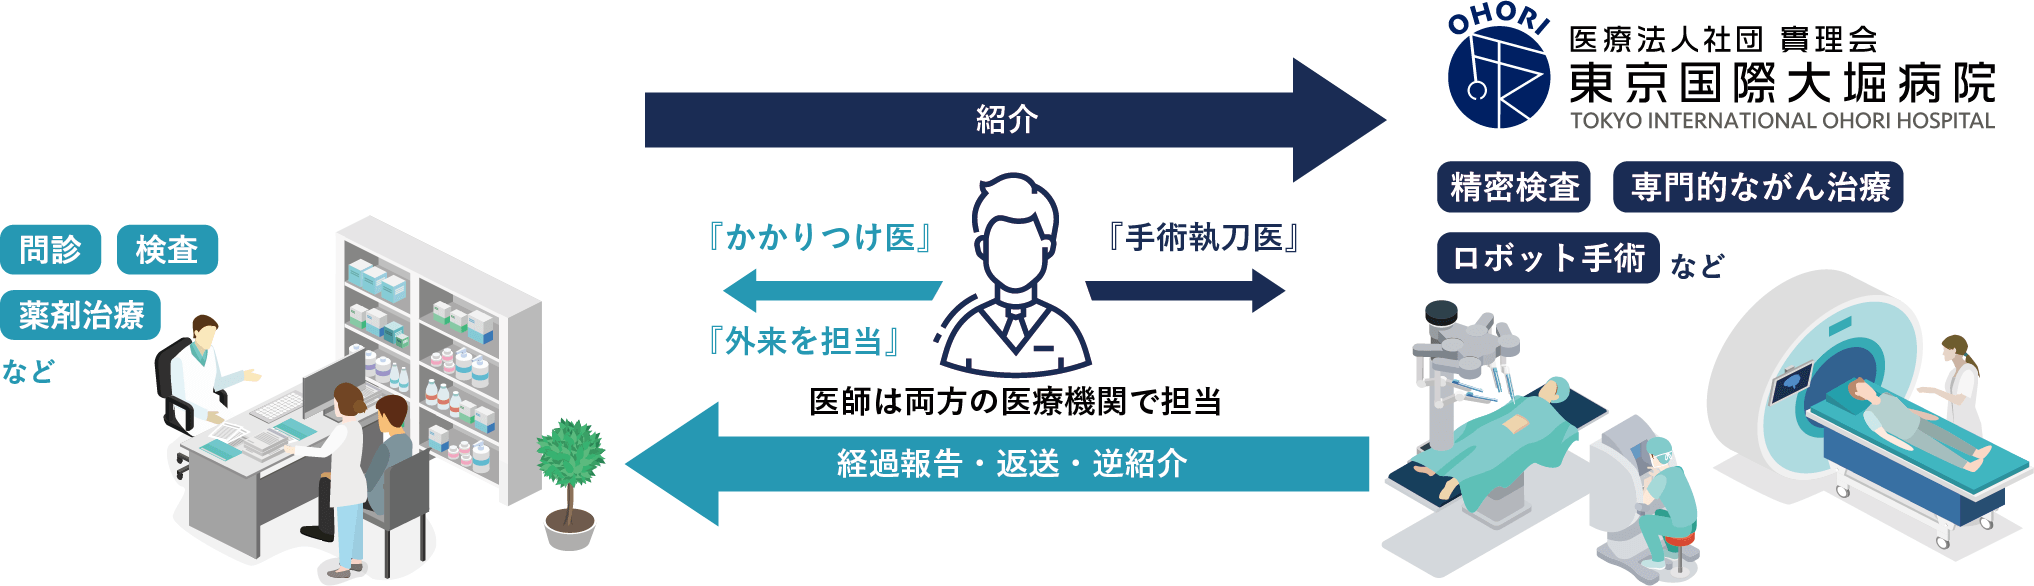 東京国際大堀病院と関連医療機関、病院との医療連携図